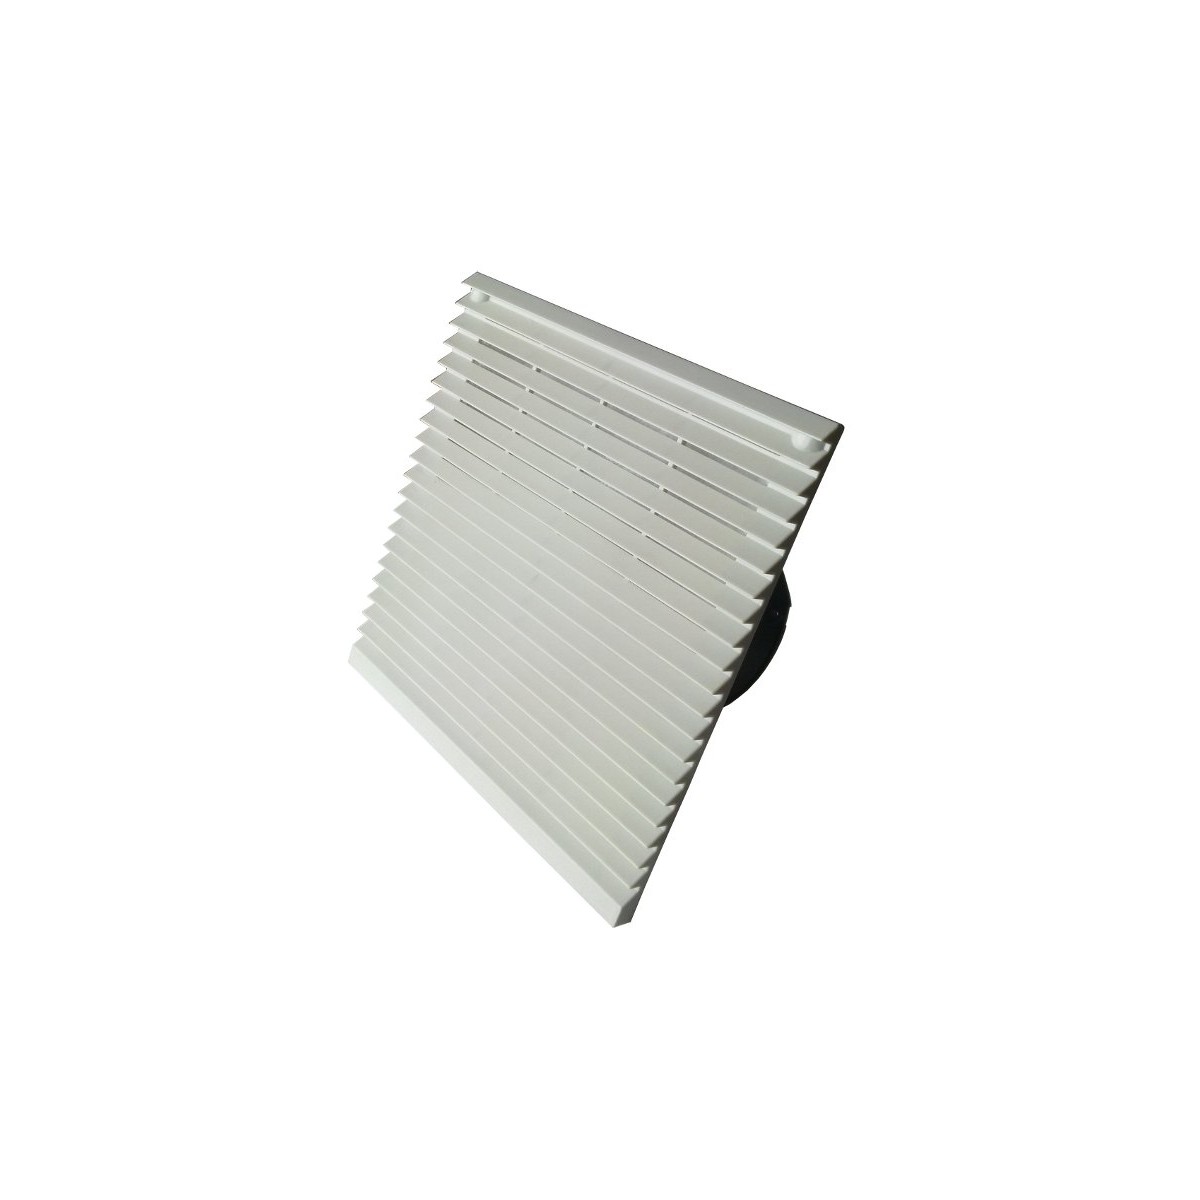 FKL 6625.230 - filter fan, 255 x 255mm